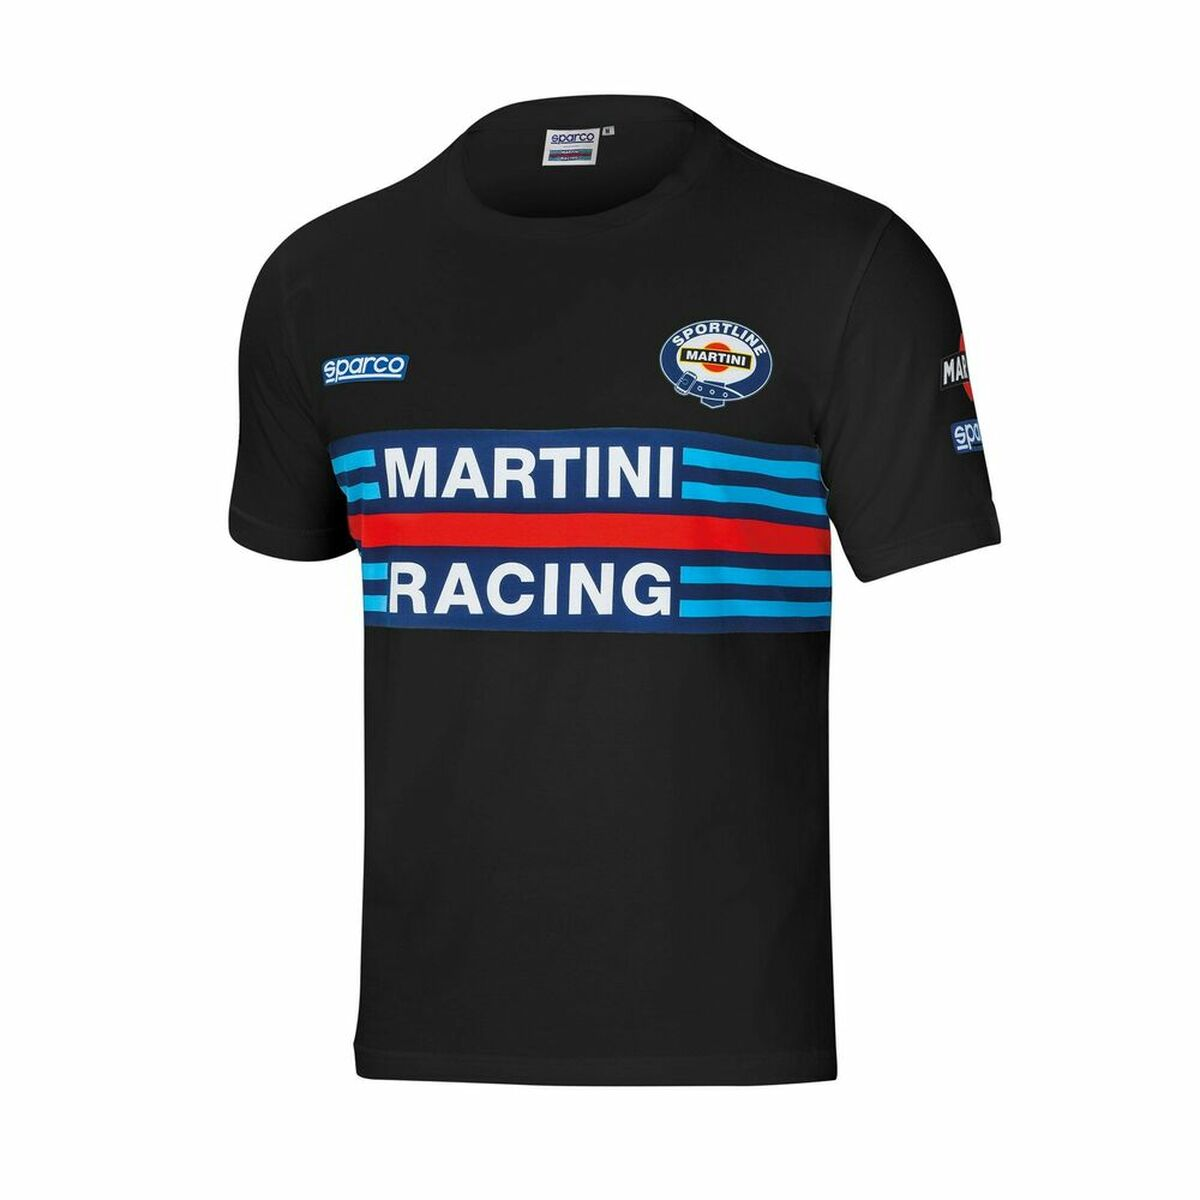 Racing Martini